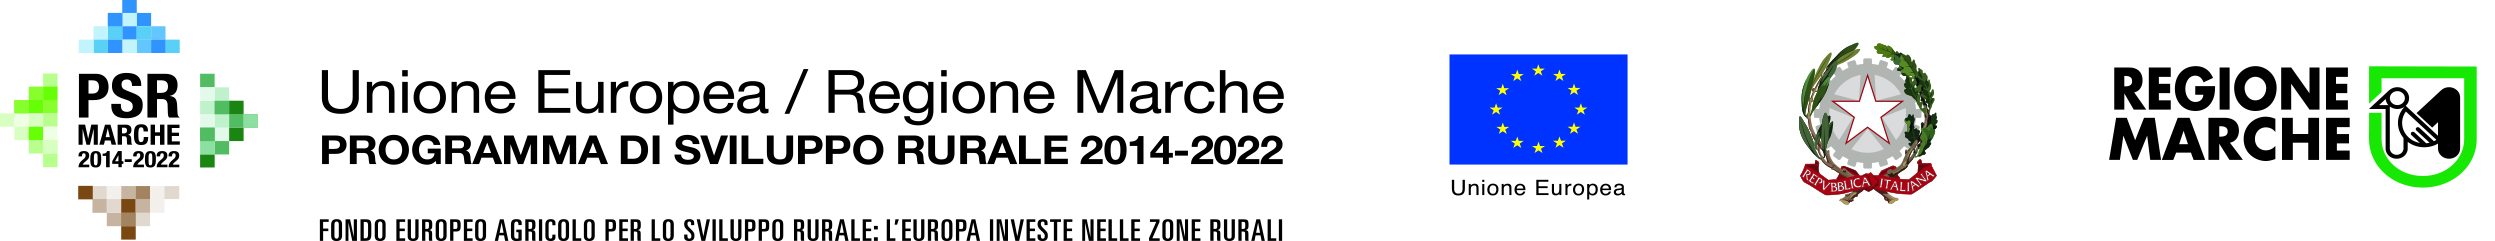 PSR 2014-2022 SOTTOMISURA 3.2 Promozione 2023-2024 - Consorzio Marche Bio